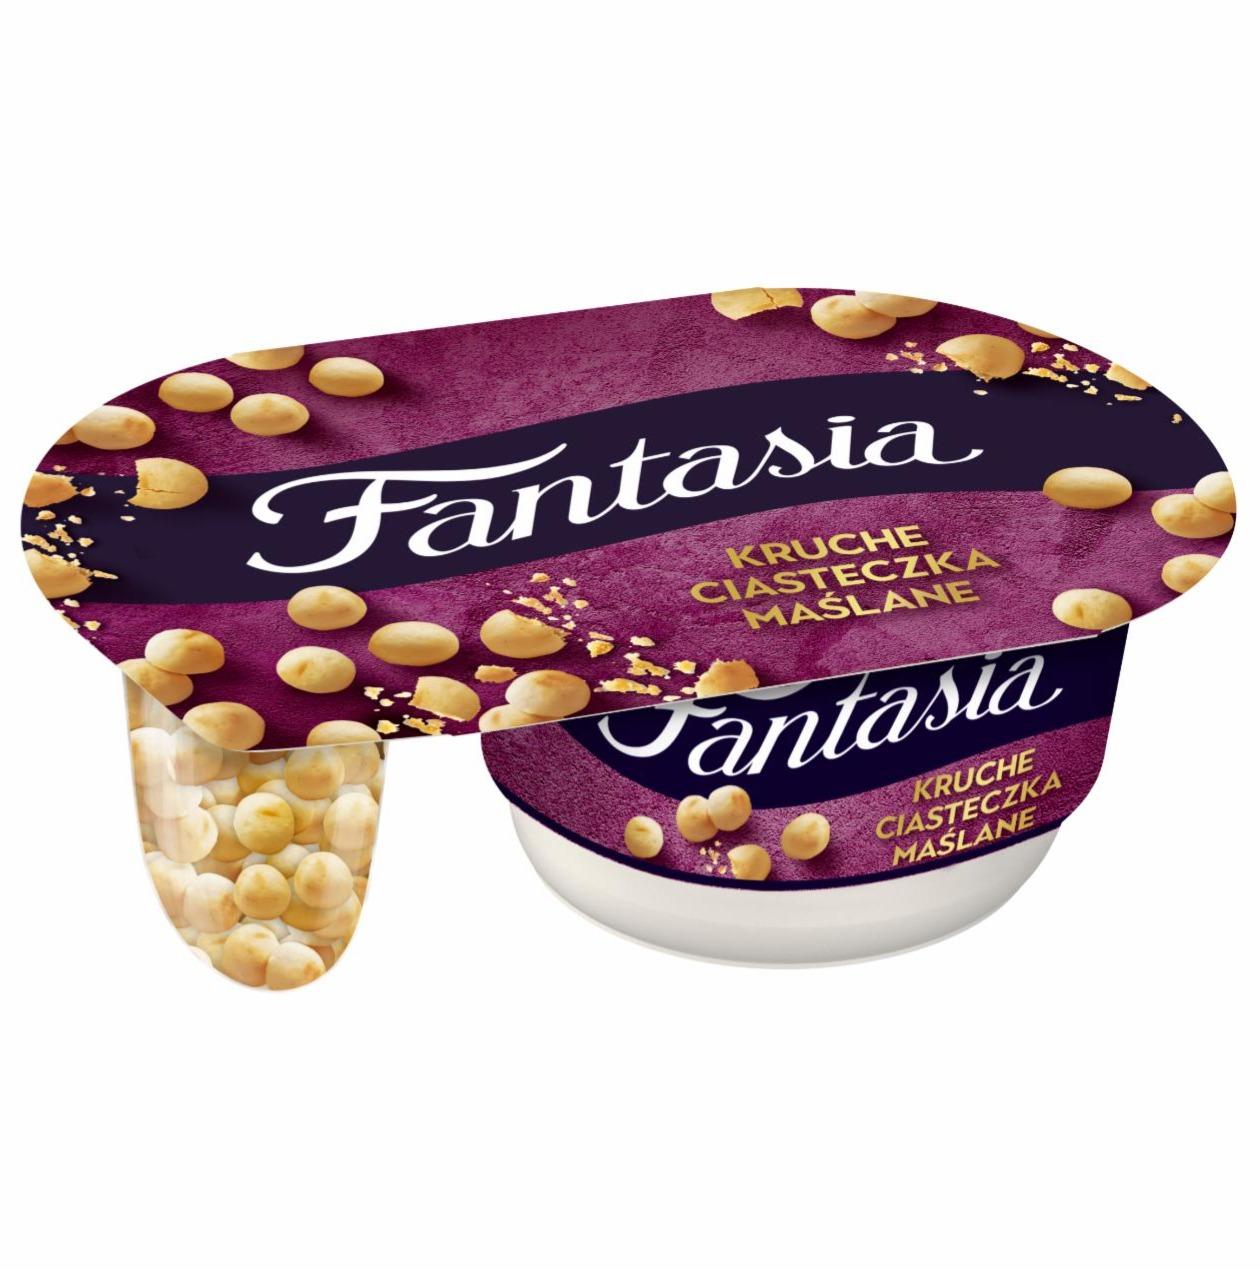 Zdjęcia - Fantasia Jogurt kremowy kruche ciasteczka maślane Danone